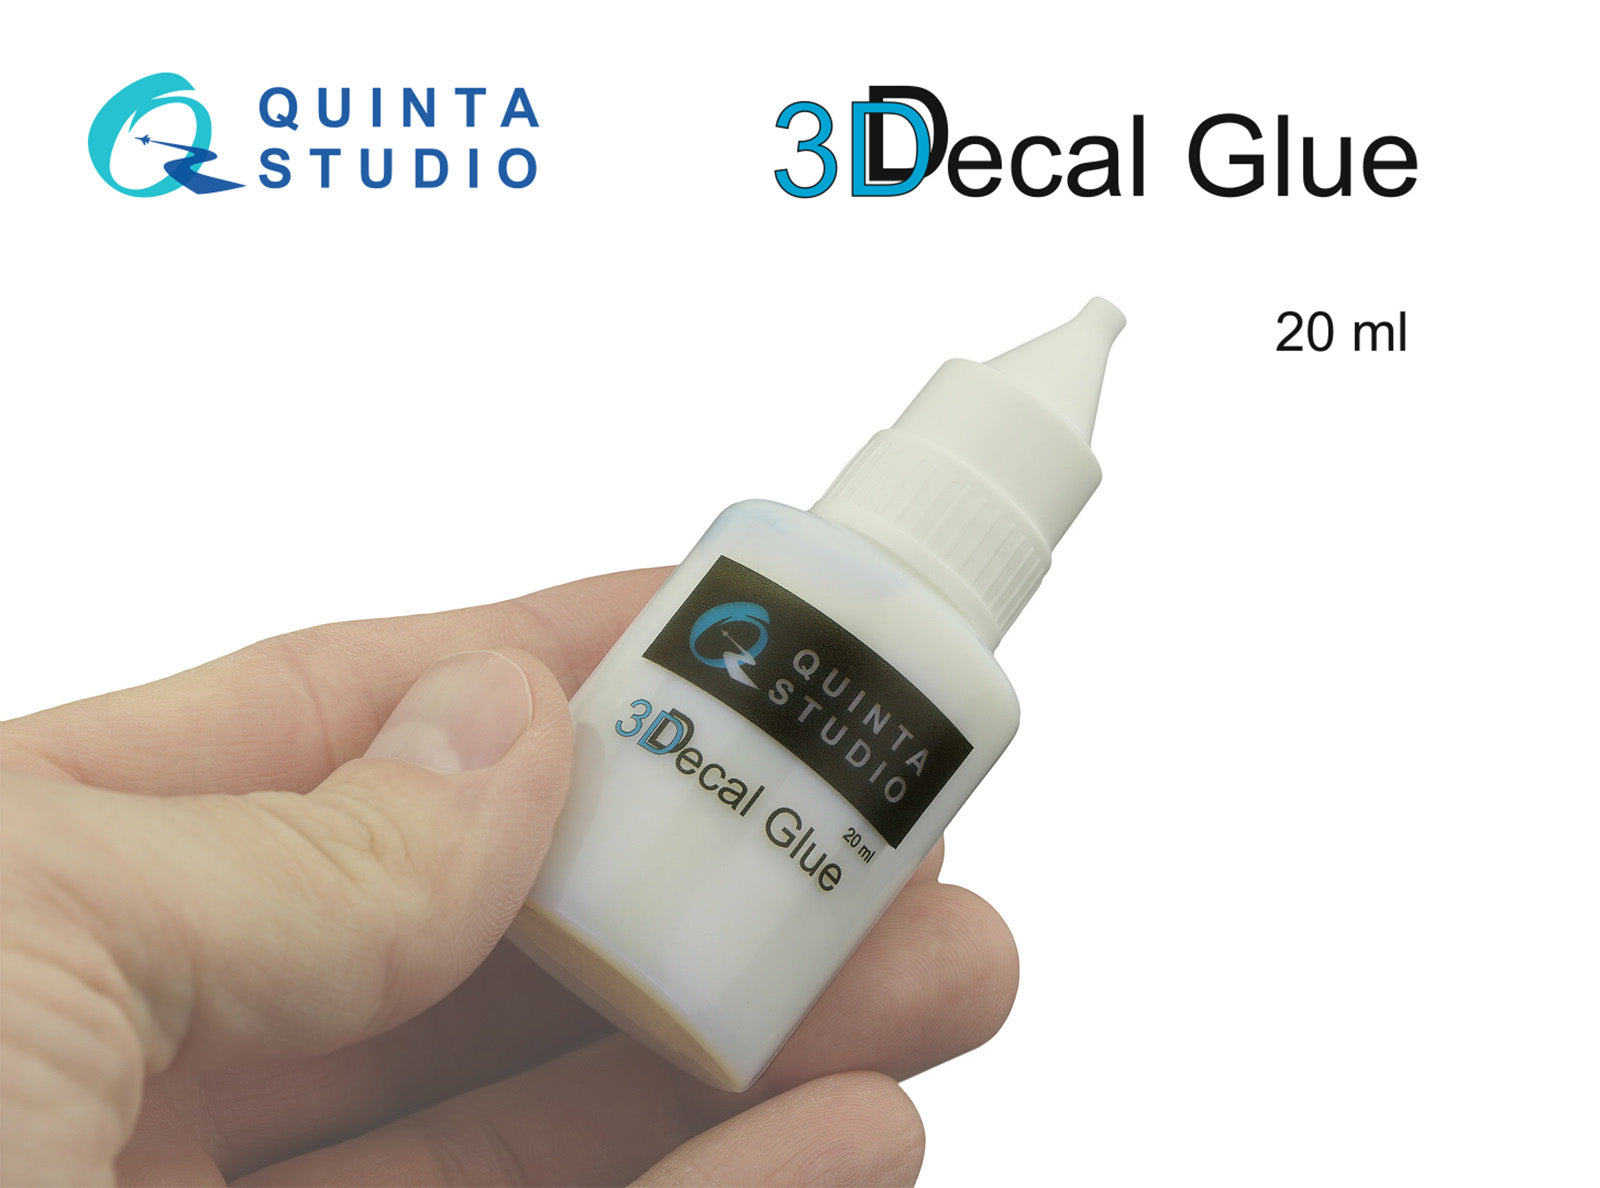 Quinta Studio - 3D Decal Glue 20ml